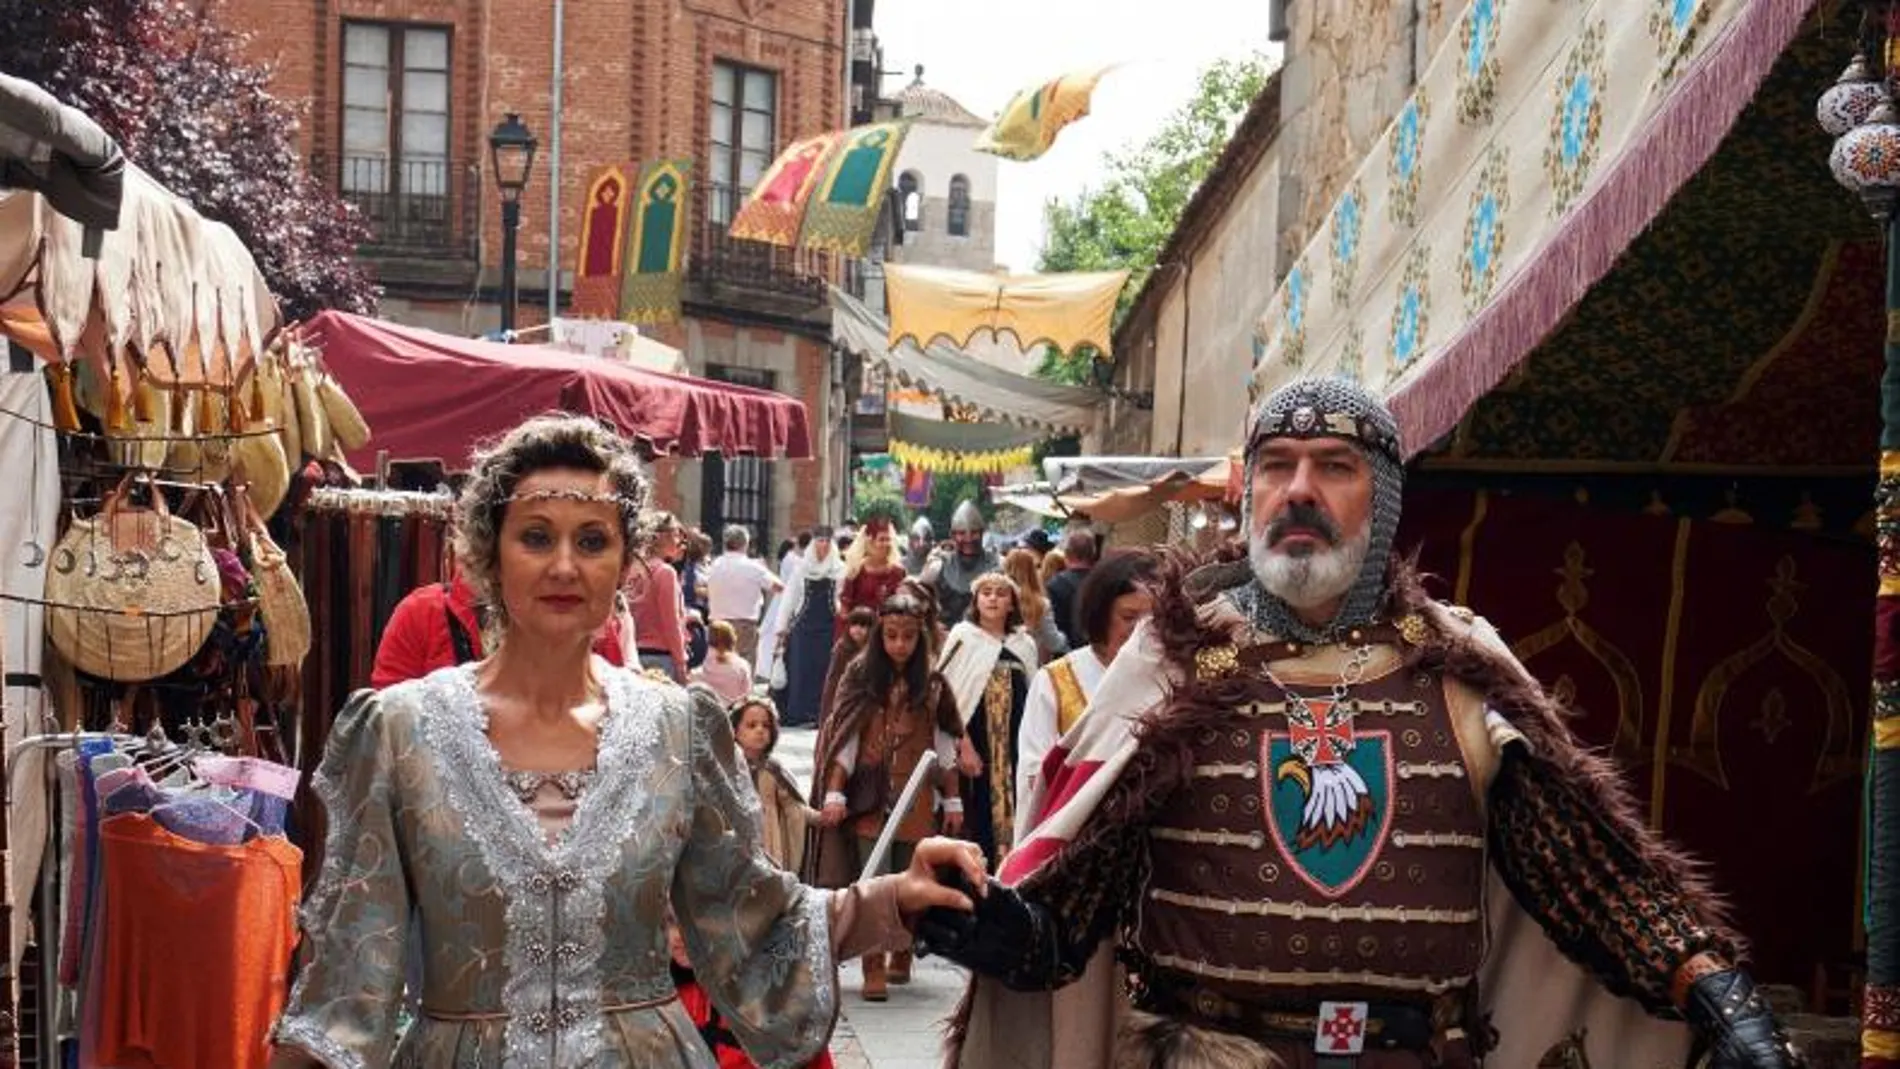 Desfile de las Tres Culturas, acto central de las Jornadas Medievales que se celebran este fin de semana en Ávila, declaradas de Interés Turístico Regional y que desde hace más de dos décadas reúne durante estas fechas a miles de personas.